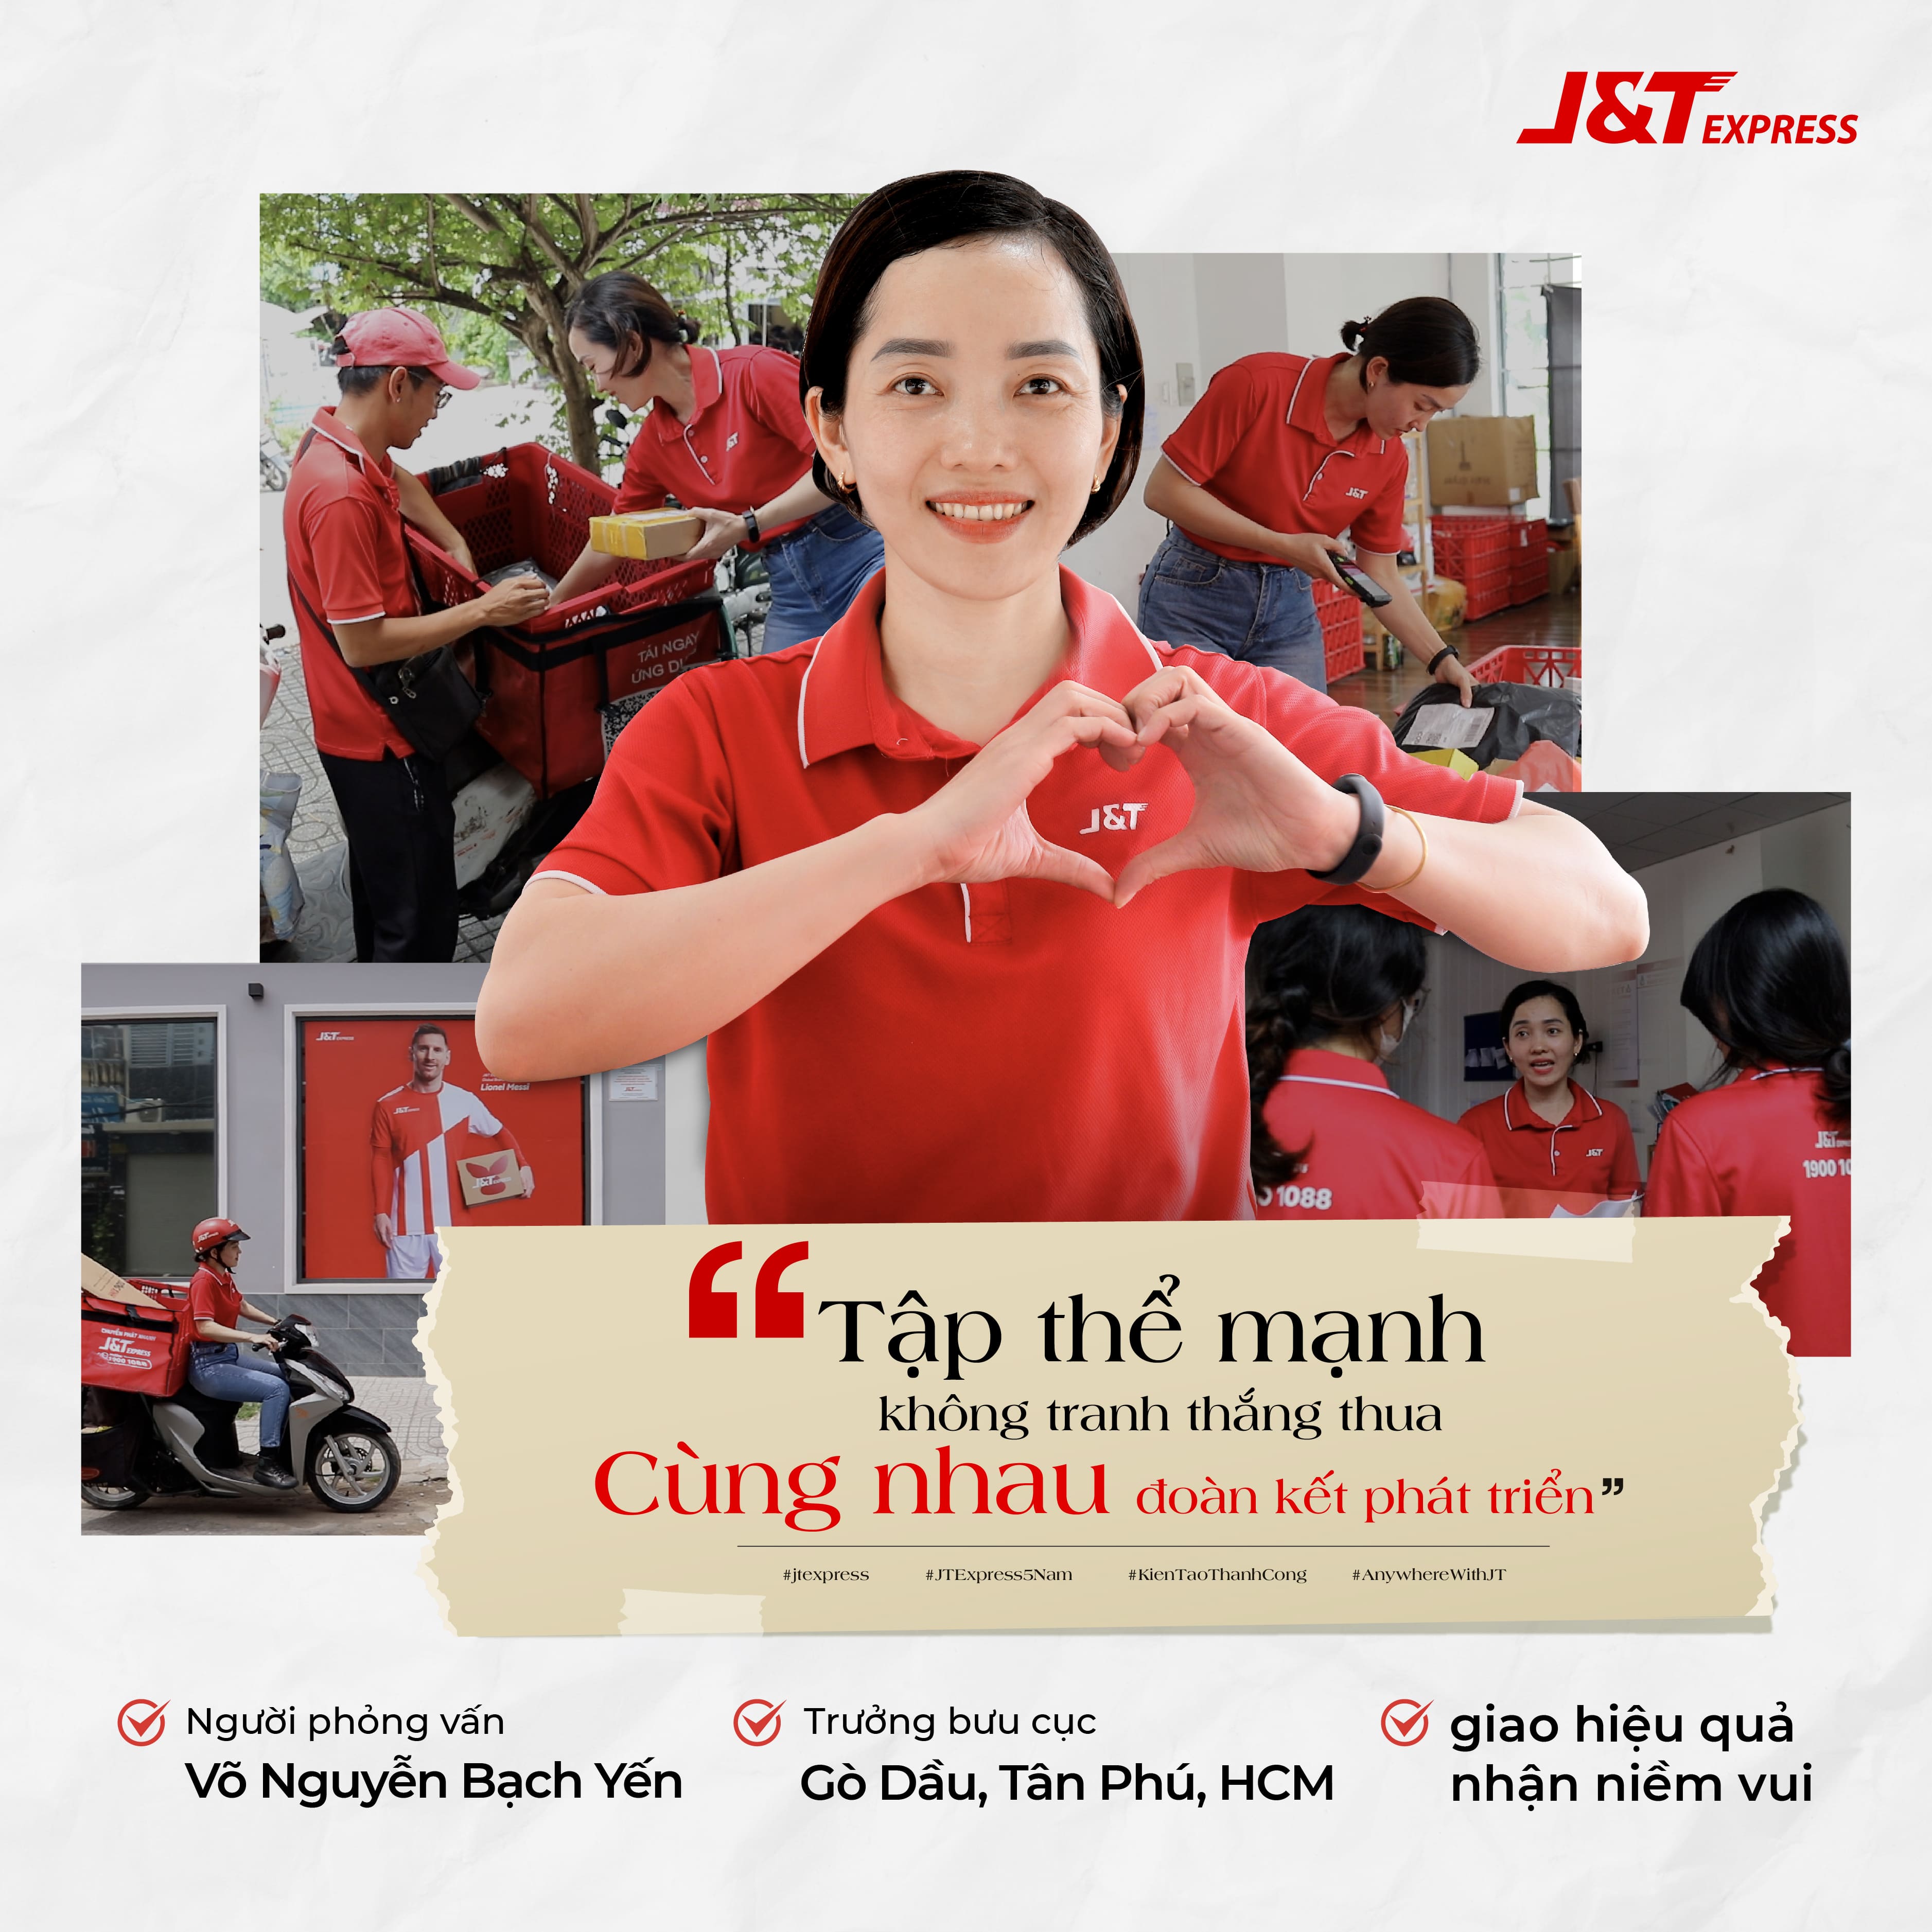 Võ Nguyễn Bạch Yến - Trưởng bưu cục J&T Express tha thiết yêu màu áo đỏ